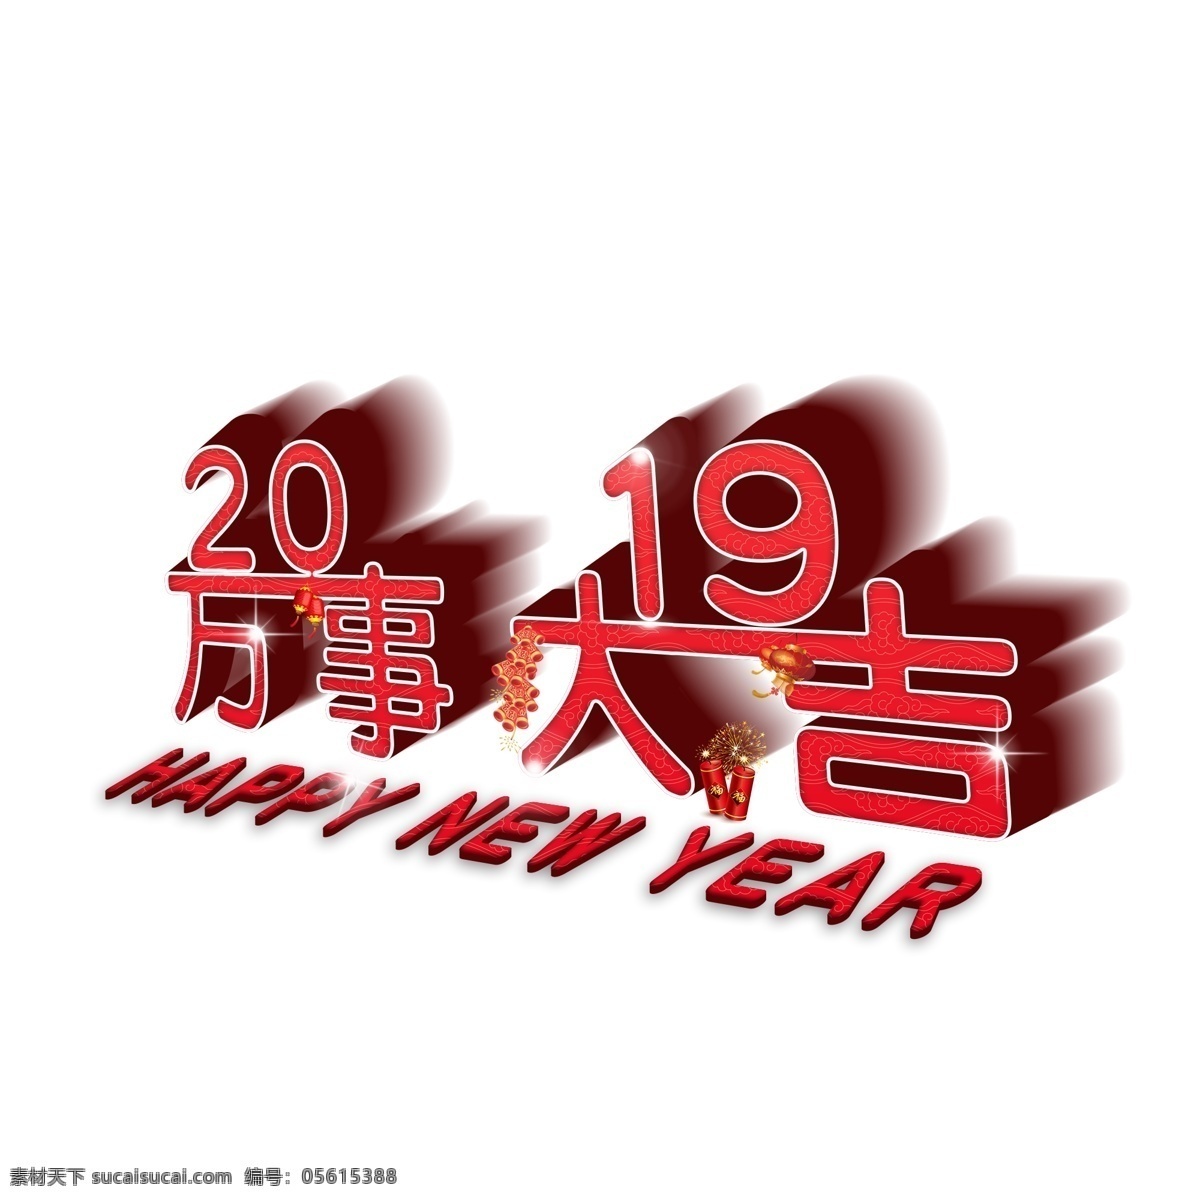 2019 万事大吉 3d 立体 艺术 字 3d立体 新年快乐 红红火火 春节 过年 猪年大吉